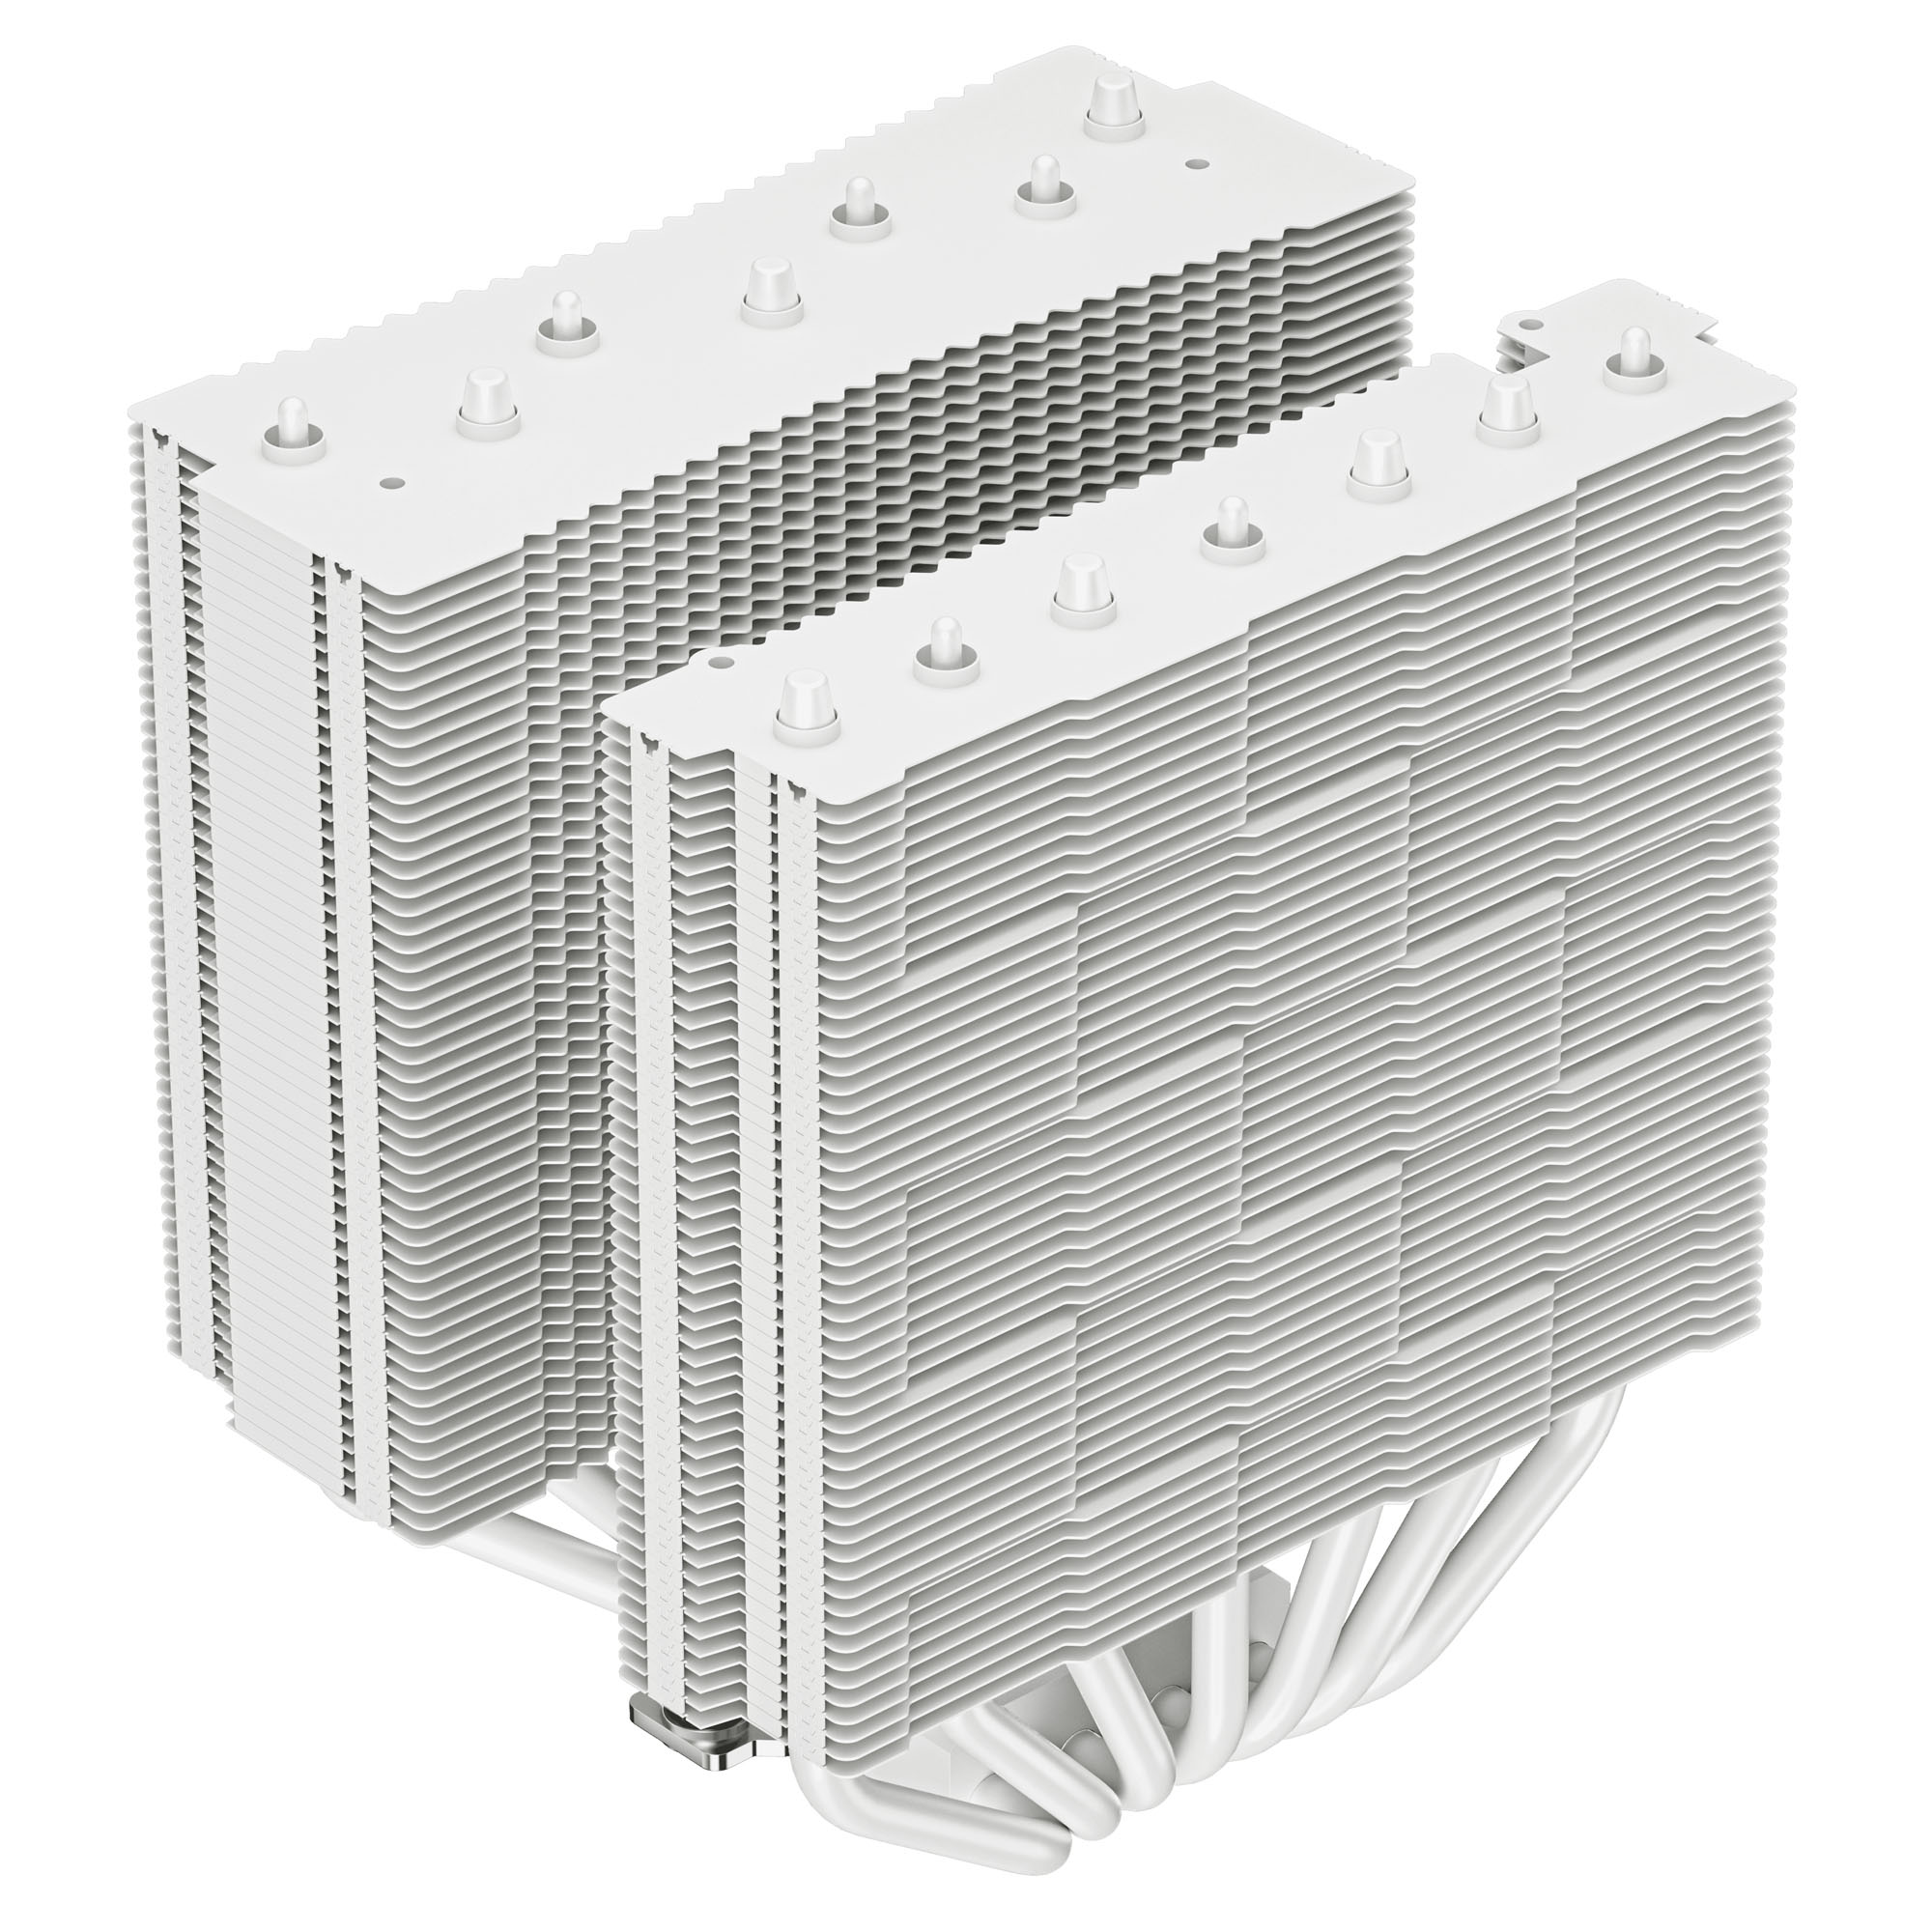 DeepCool - DeepCool ASSASSIN 4S 140mm Fan CPU Cooler - White